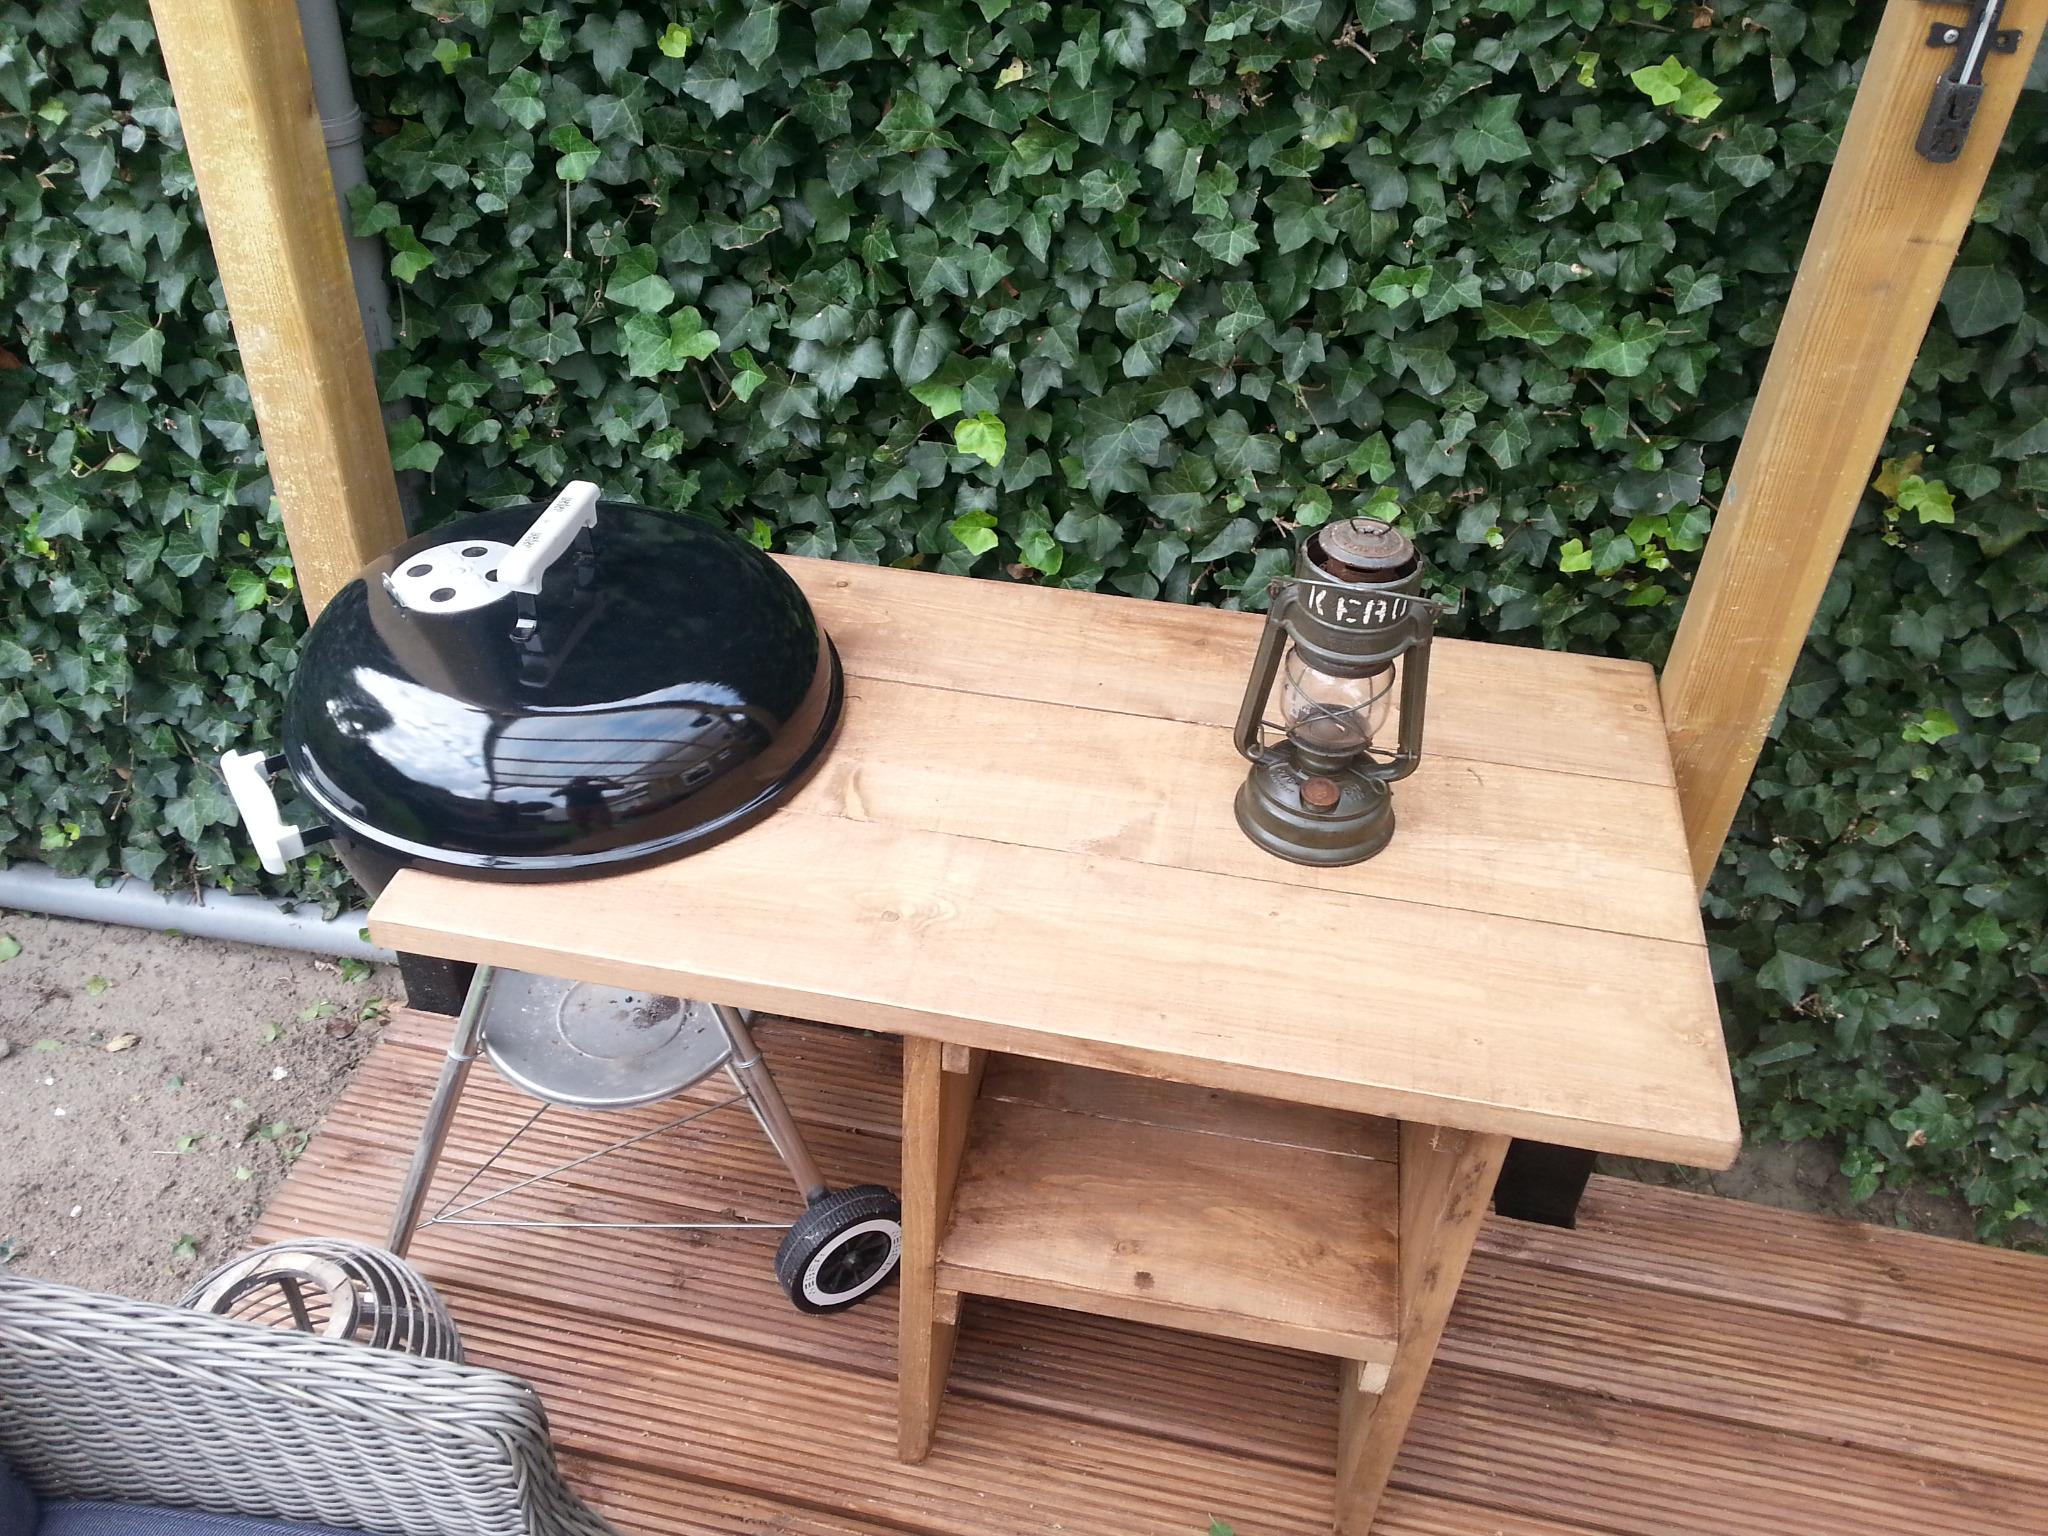 BBQ Crib Up in Here on Twitter: "RT @wood78nl: tafel van #steigerhout , leuk om te maken en past om de #weber http://t.co/axyrsfe9Mr" / Twitter